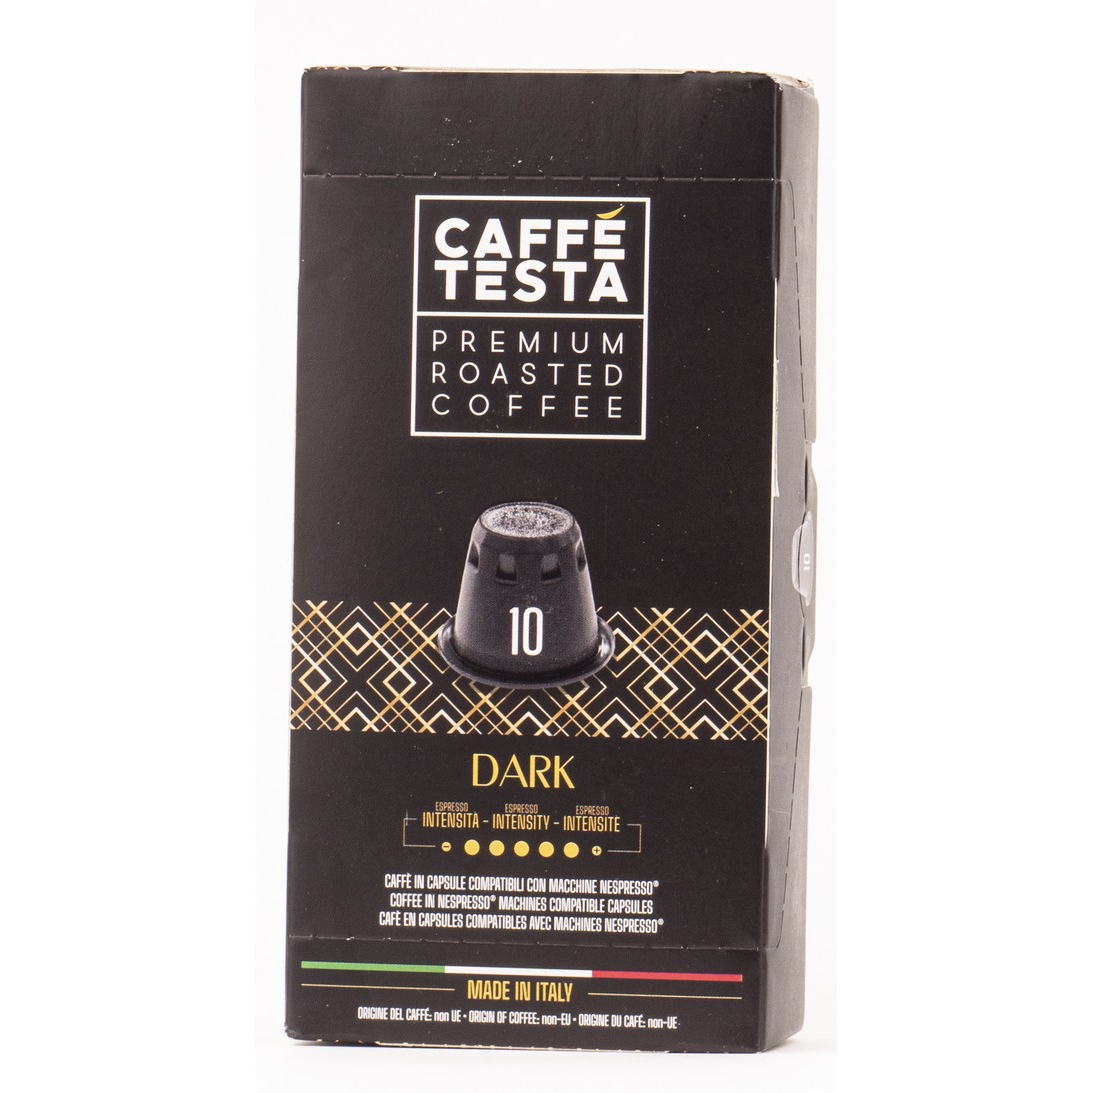 Кофе Caffe Testa Dark в капсулах 20/80, 55 г кофе в капсулах diemme caffe spirito del salvador 50 шт